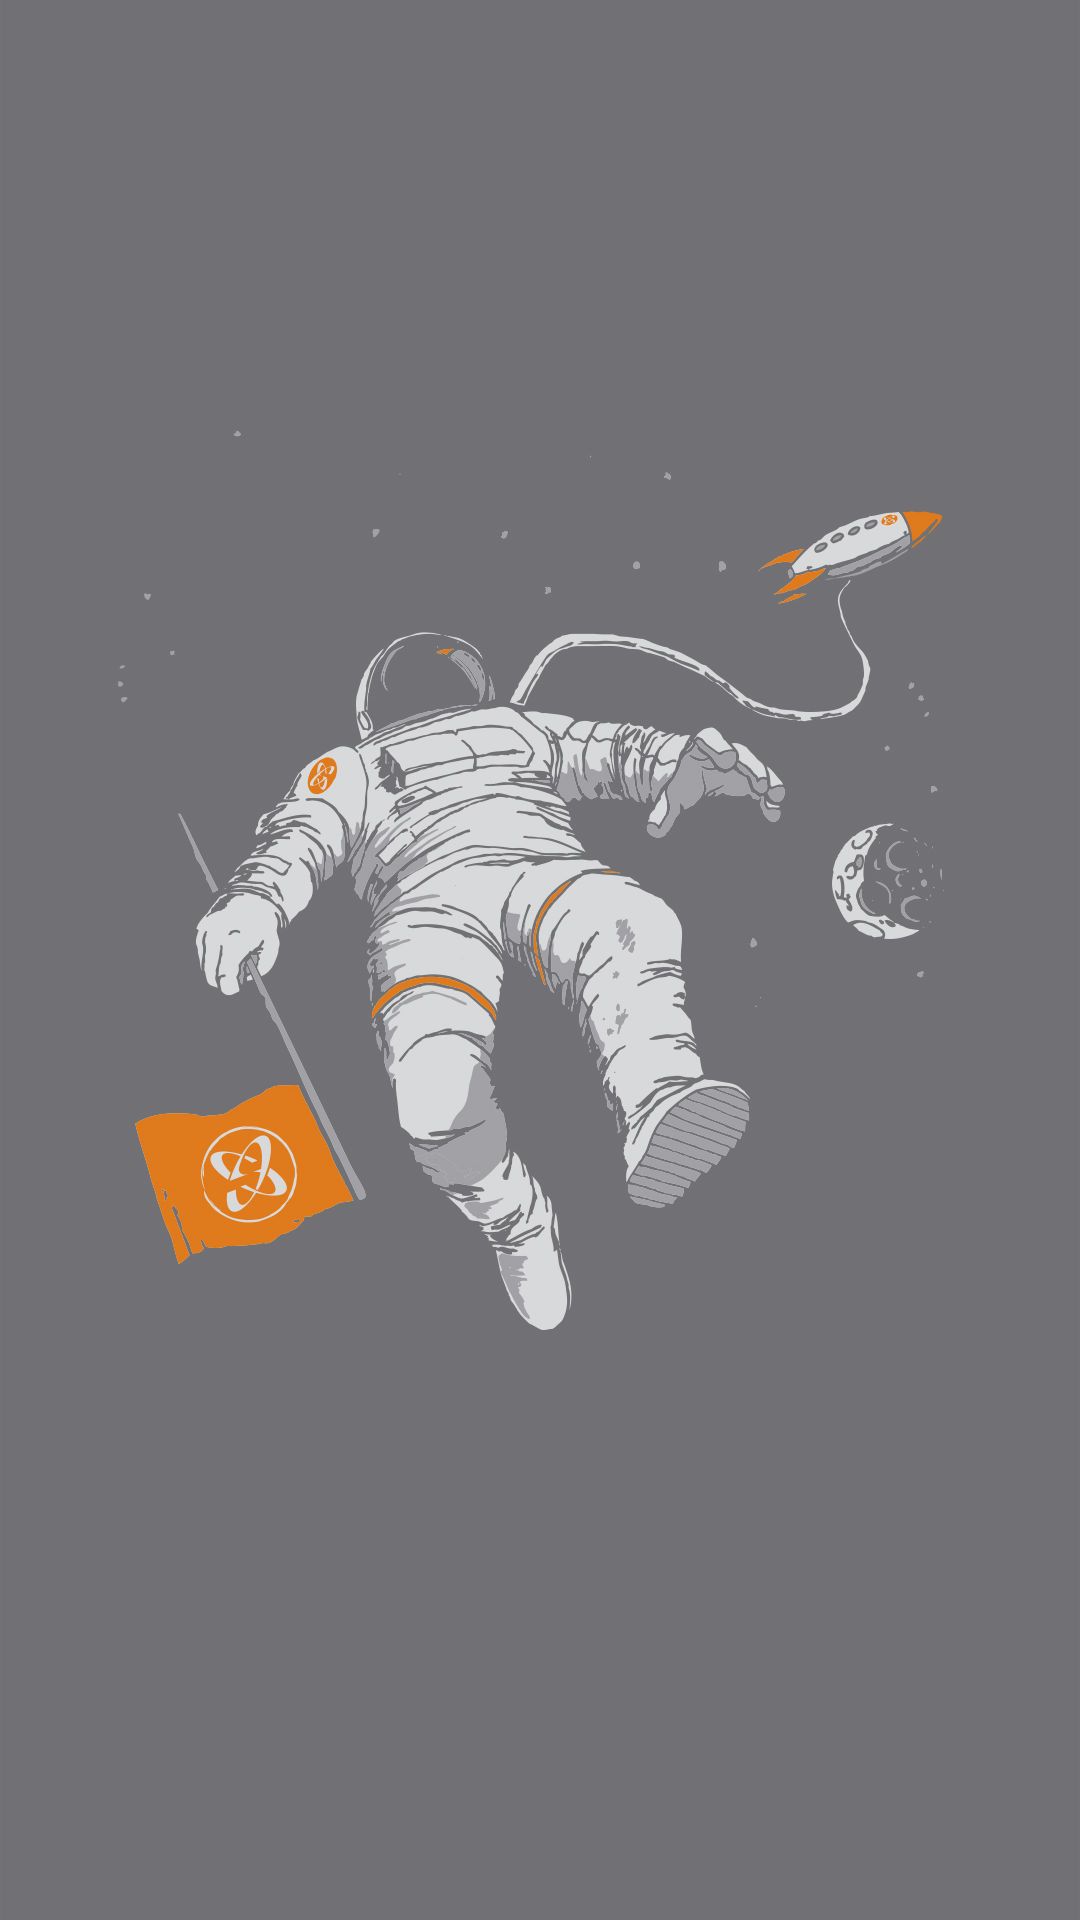 Download Free Astronaut iPhone .pixelstalk.net